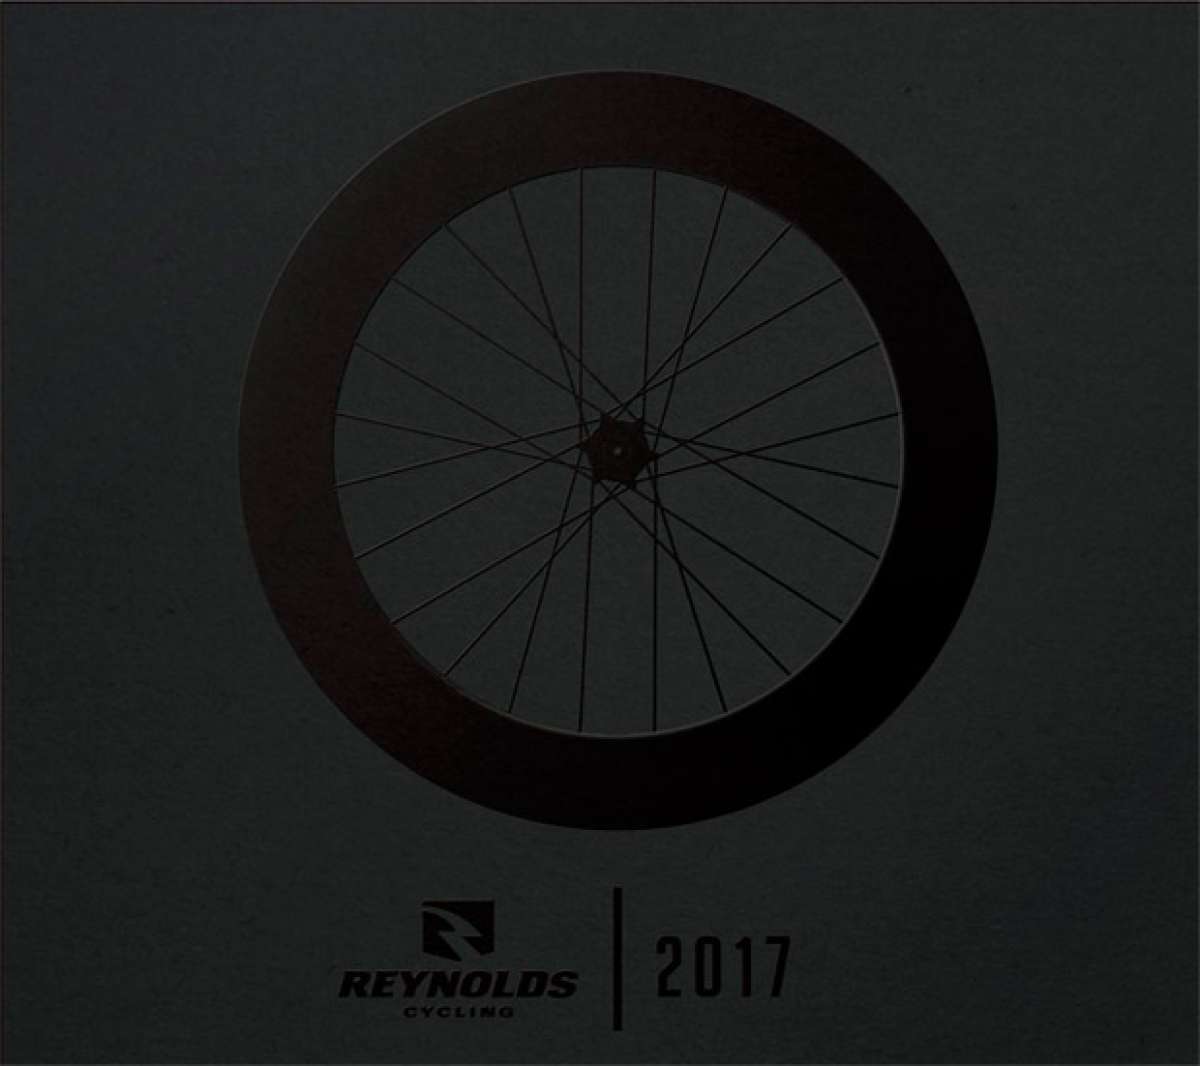 Catálogo de Reynolds 2017. Toda la gama de ruedas Reynolds para la temporada 2017